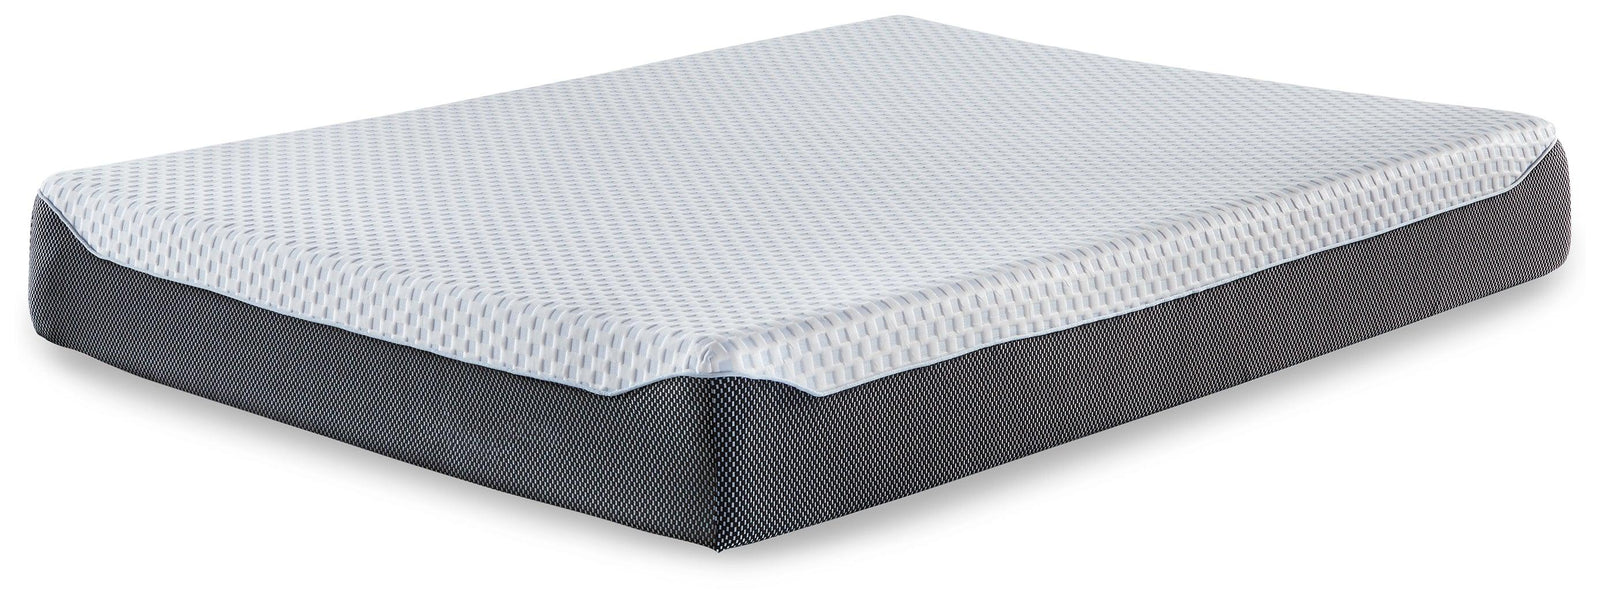 10 Inch Chime Elite White/blue Queen Memory Foam Mattress In A Box